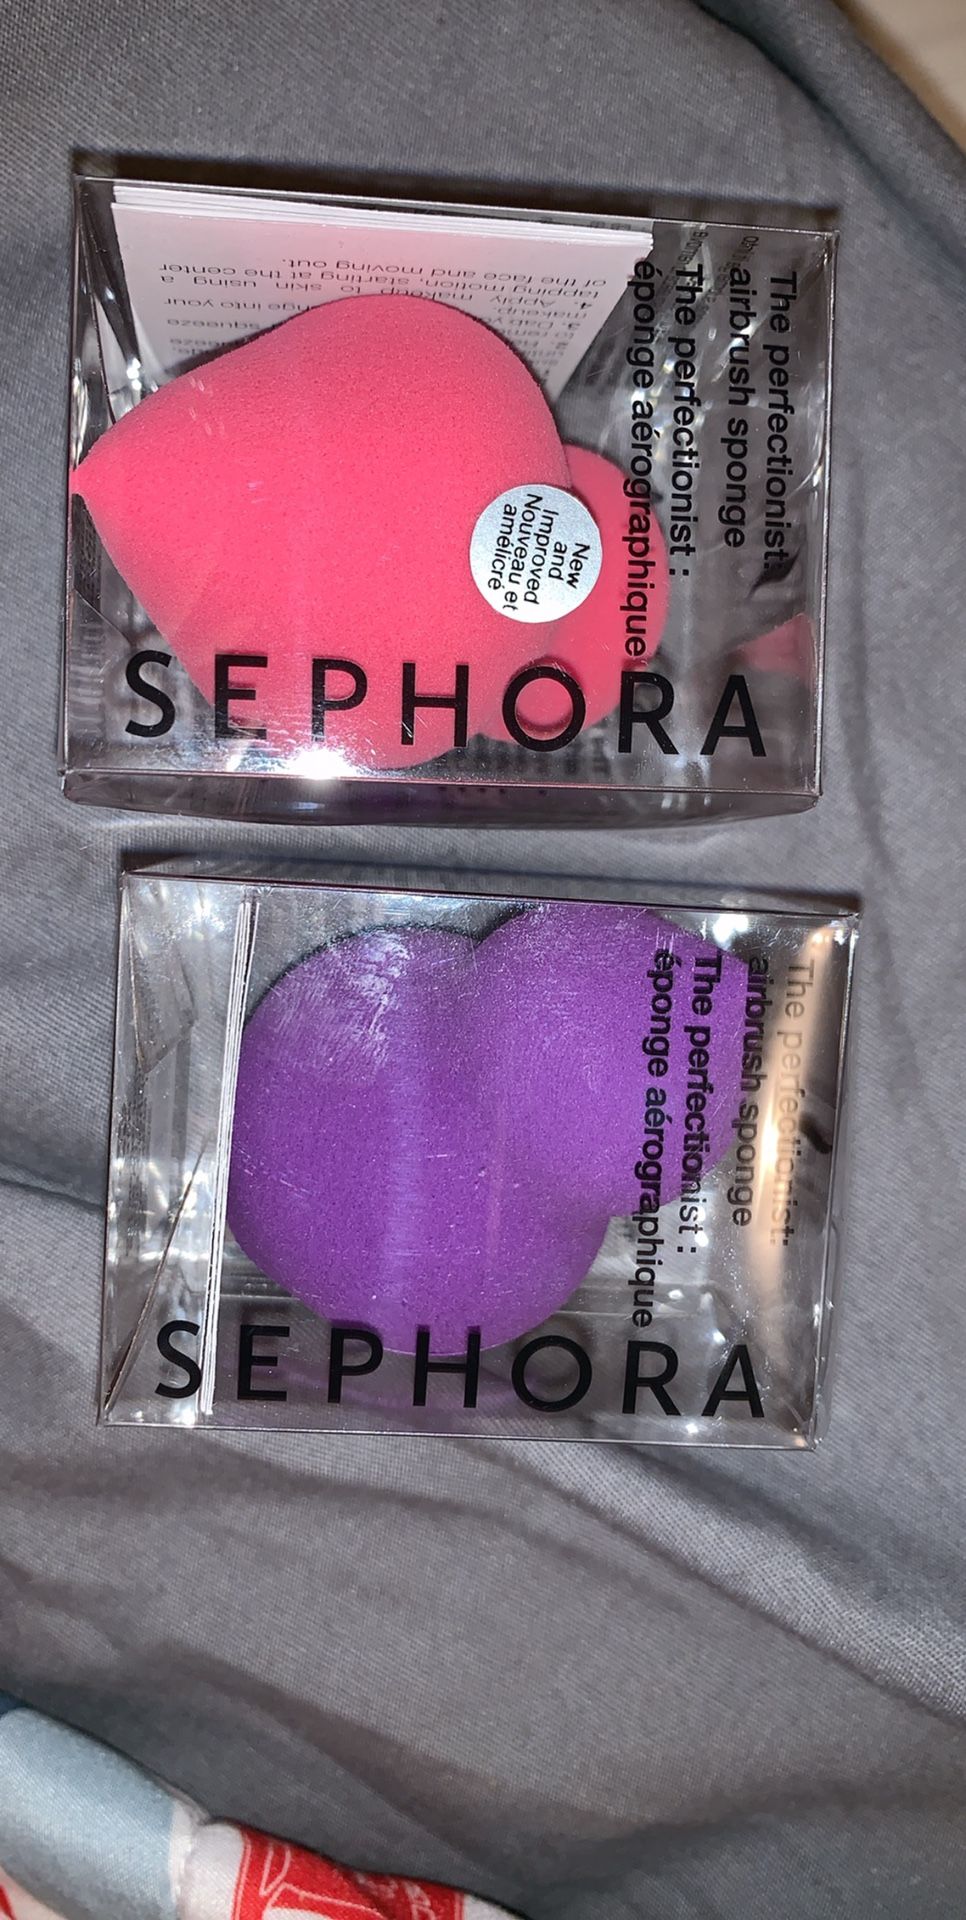 Brand new beauty blenders from Sephora